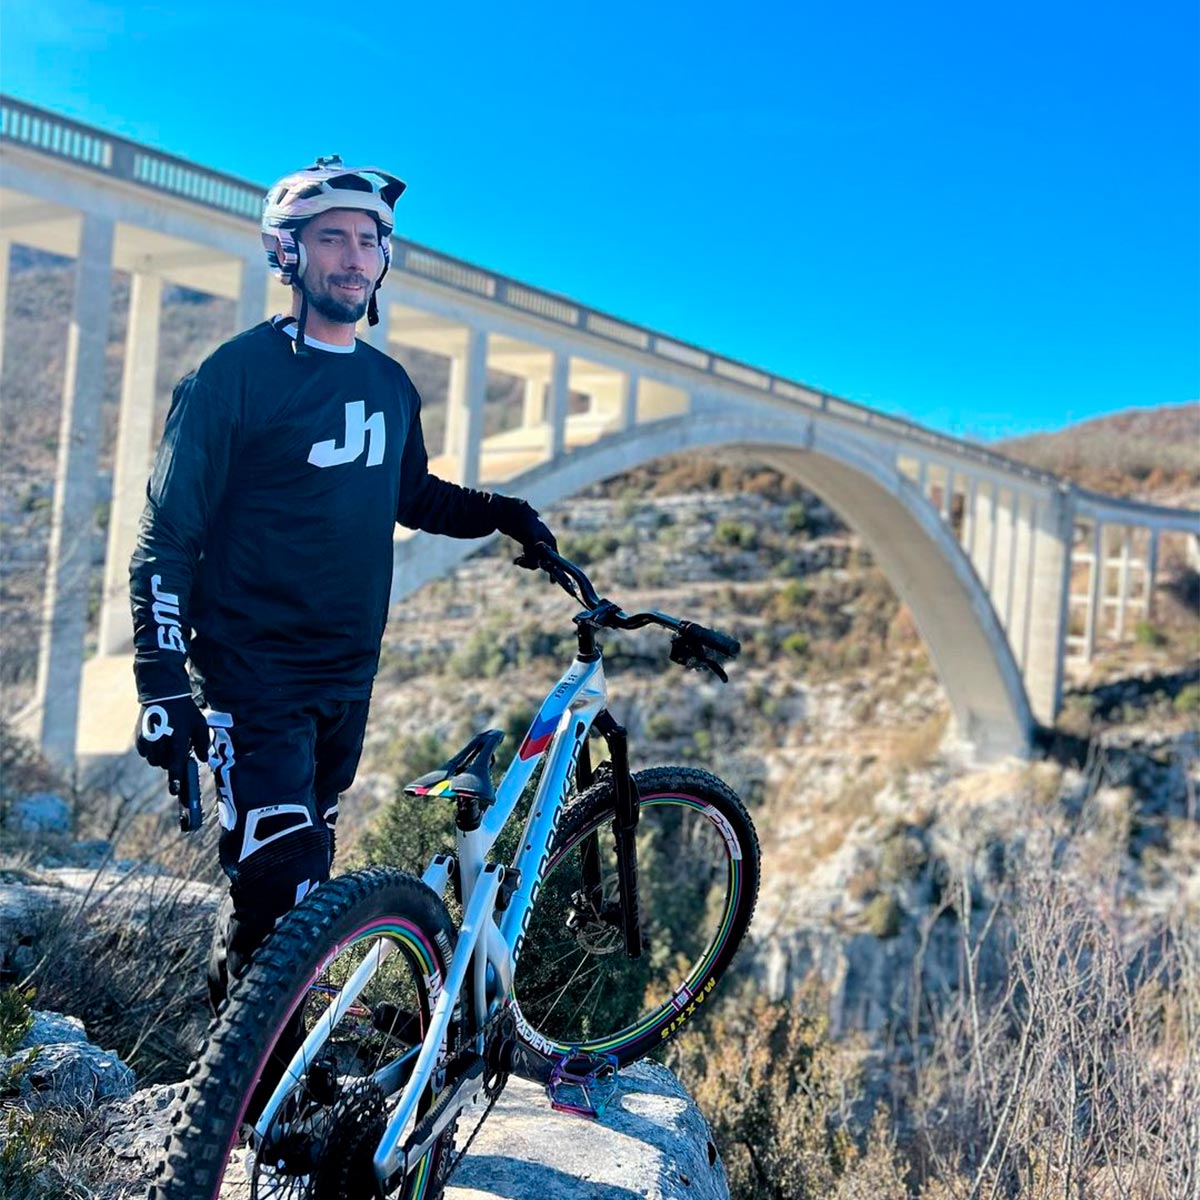 Vittorio Brumotti se juega la vida sobre la bici en uno de los puentes más altos de Europa